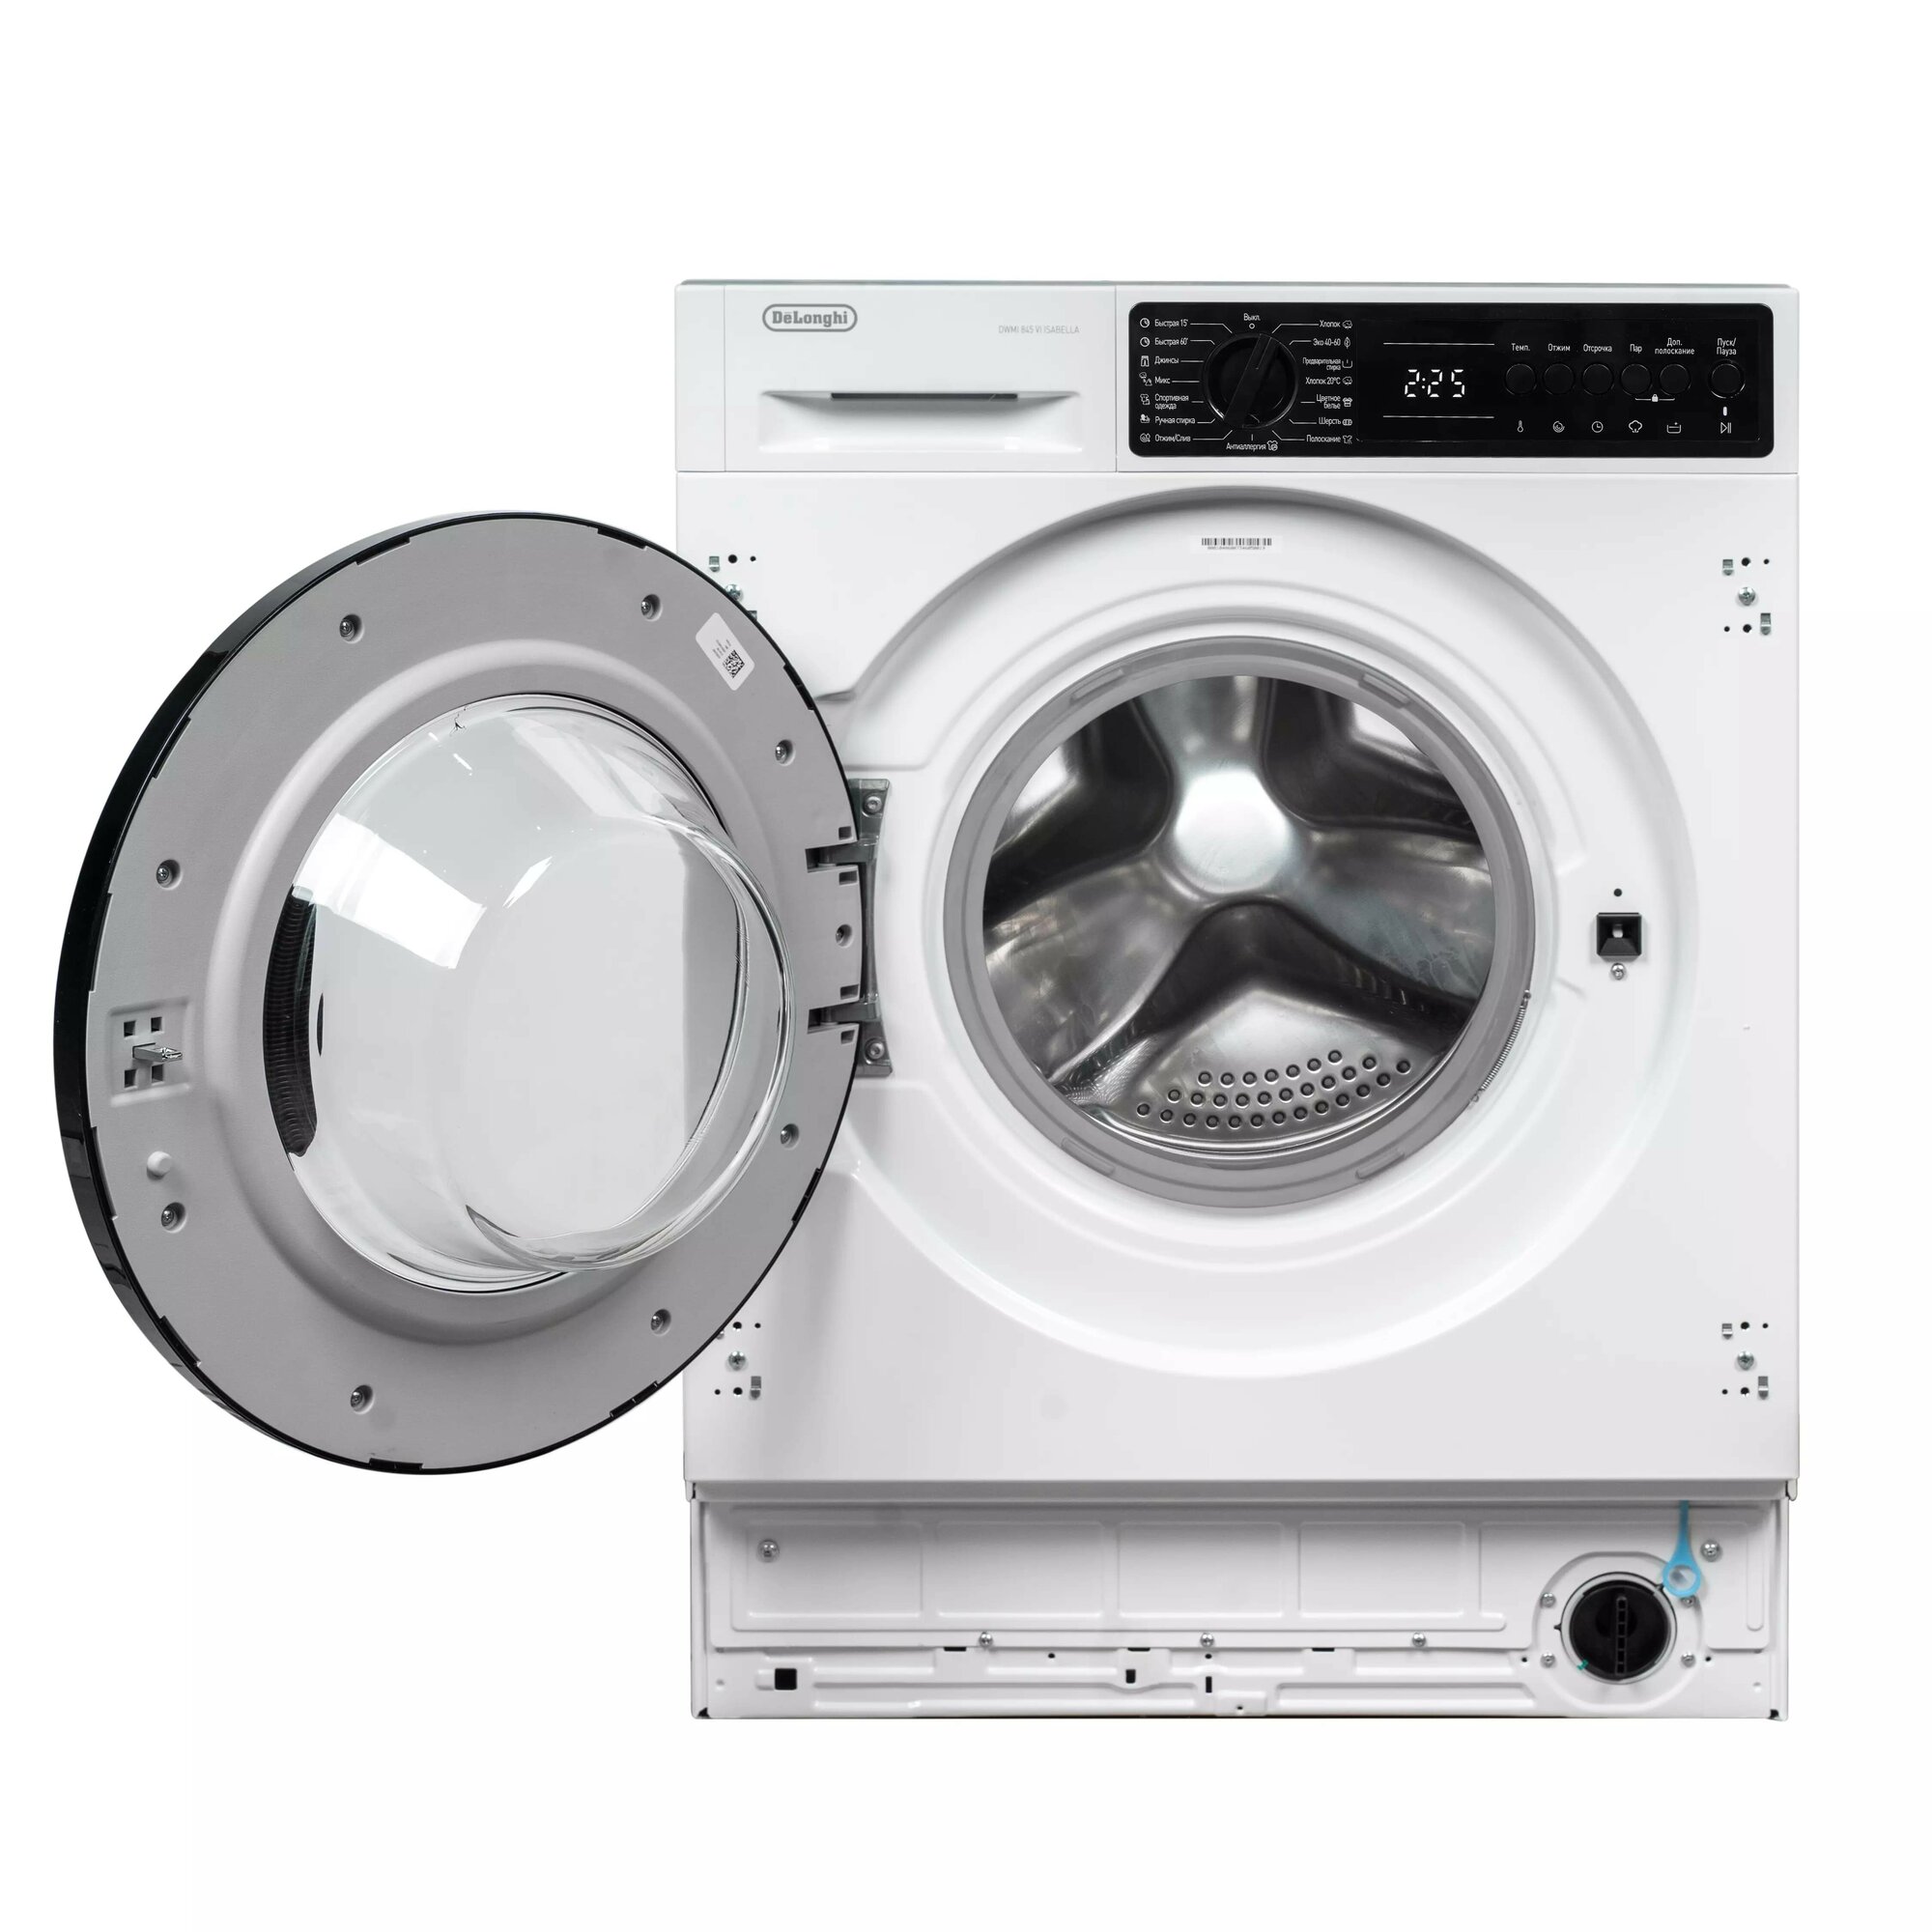 Встраиваемая стиральная машина Delonghi DWMI 845 VI ISABELLA